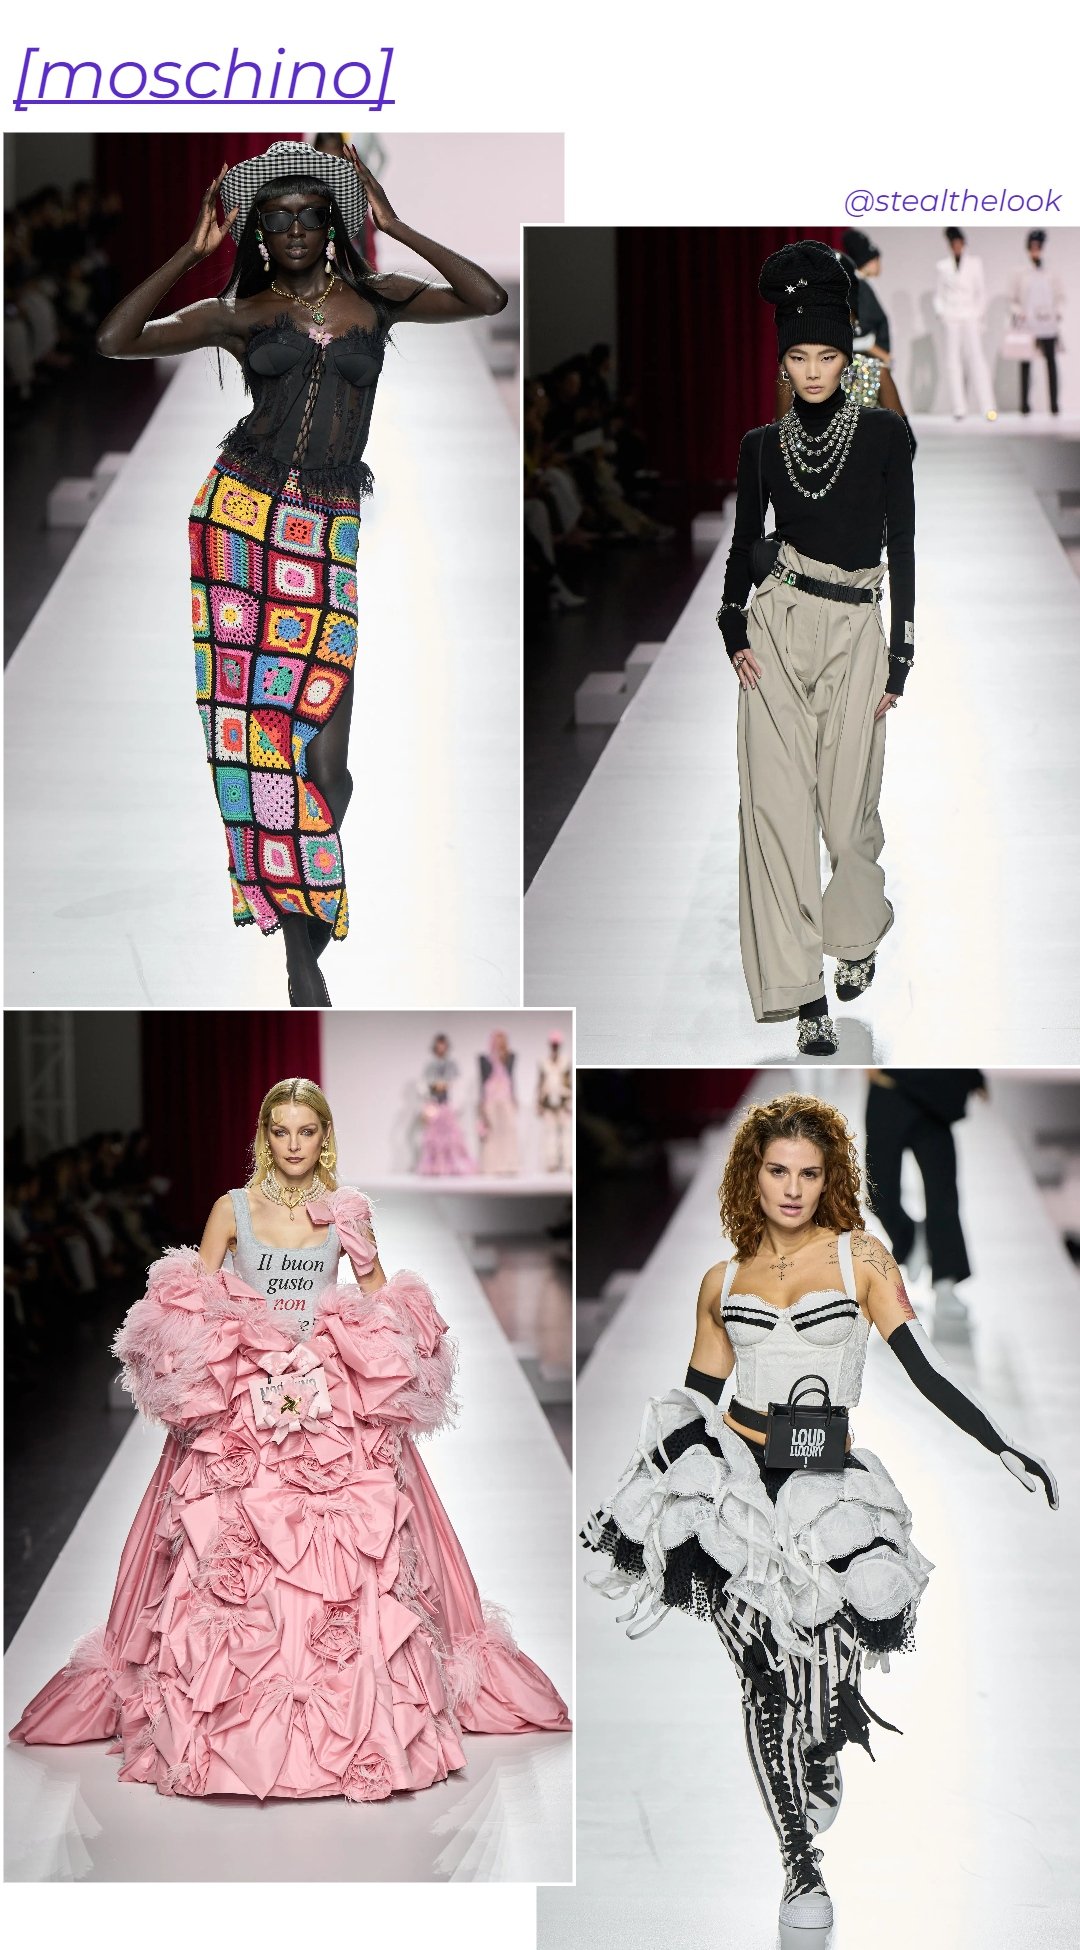 Moschino - roupas diversas - Milano Fashion Week - primavera - colagem de imagens - https://stealthelook.com.br